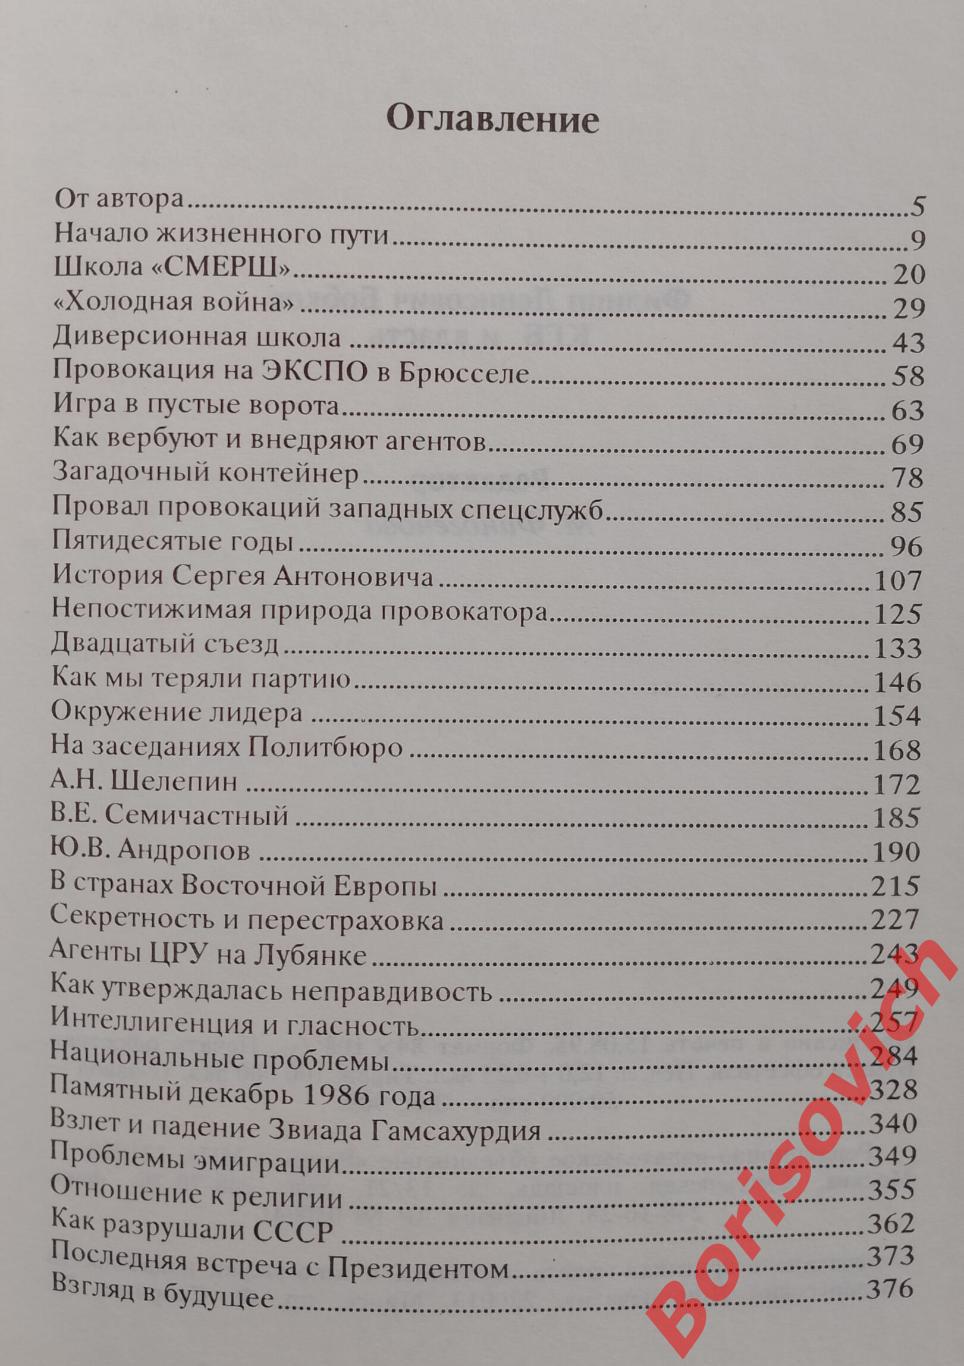 Ф. Д. Бобков КГБ и ВЛАСТЬ 1995 г 384 страницы 1